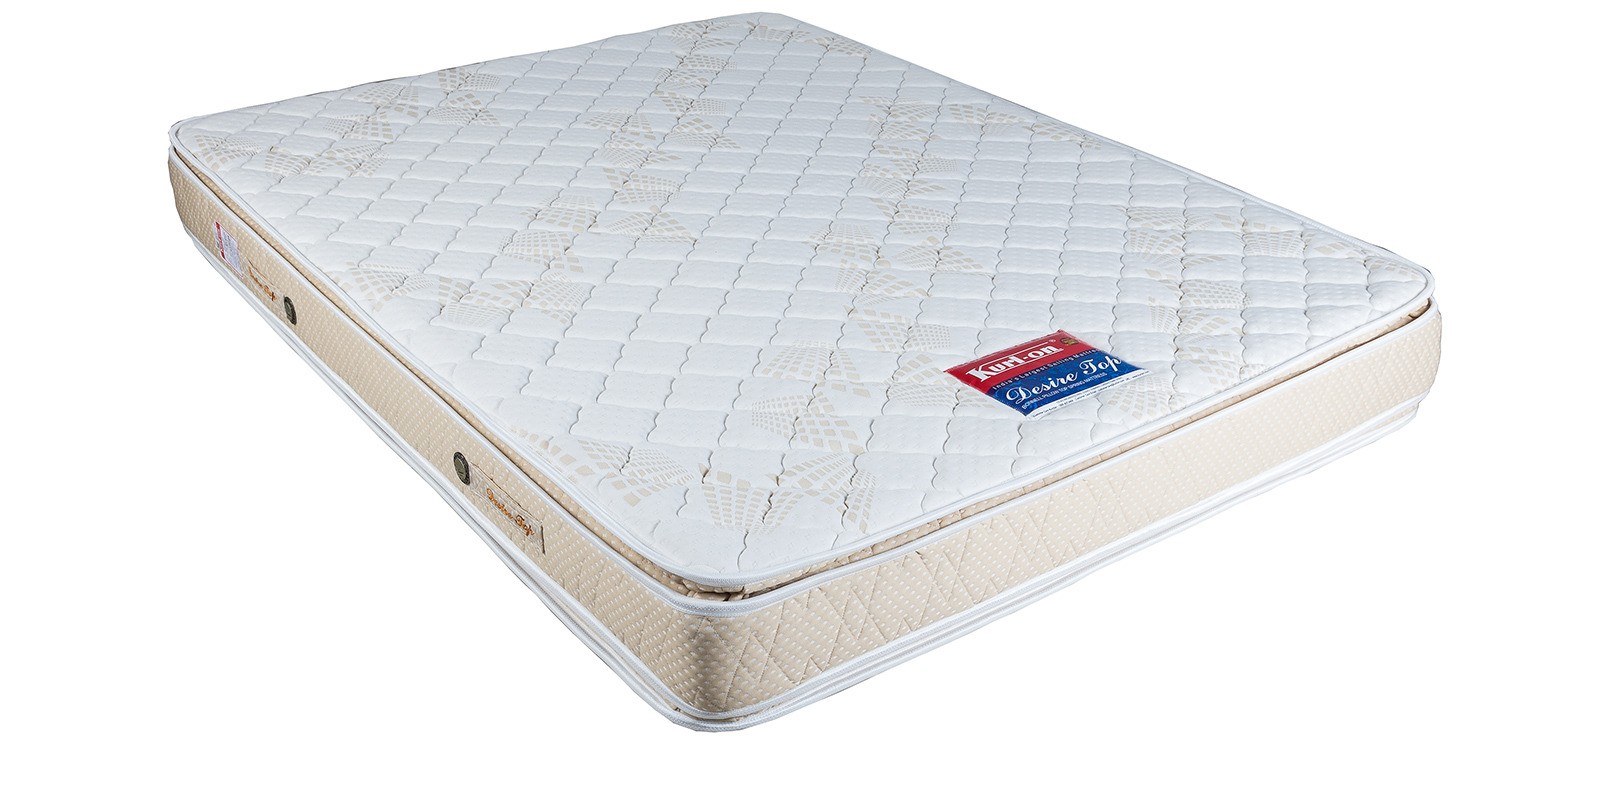 kurlon panacea mattress price